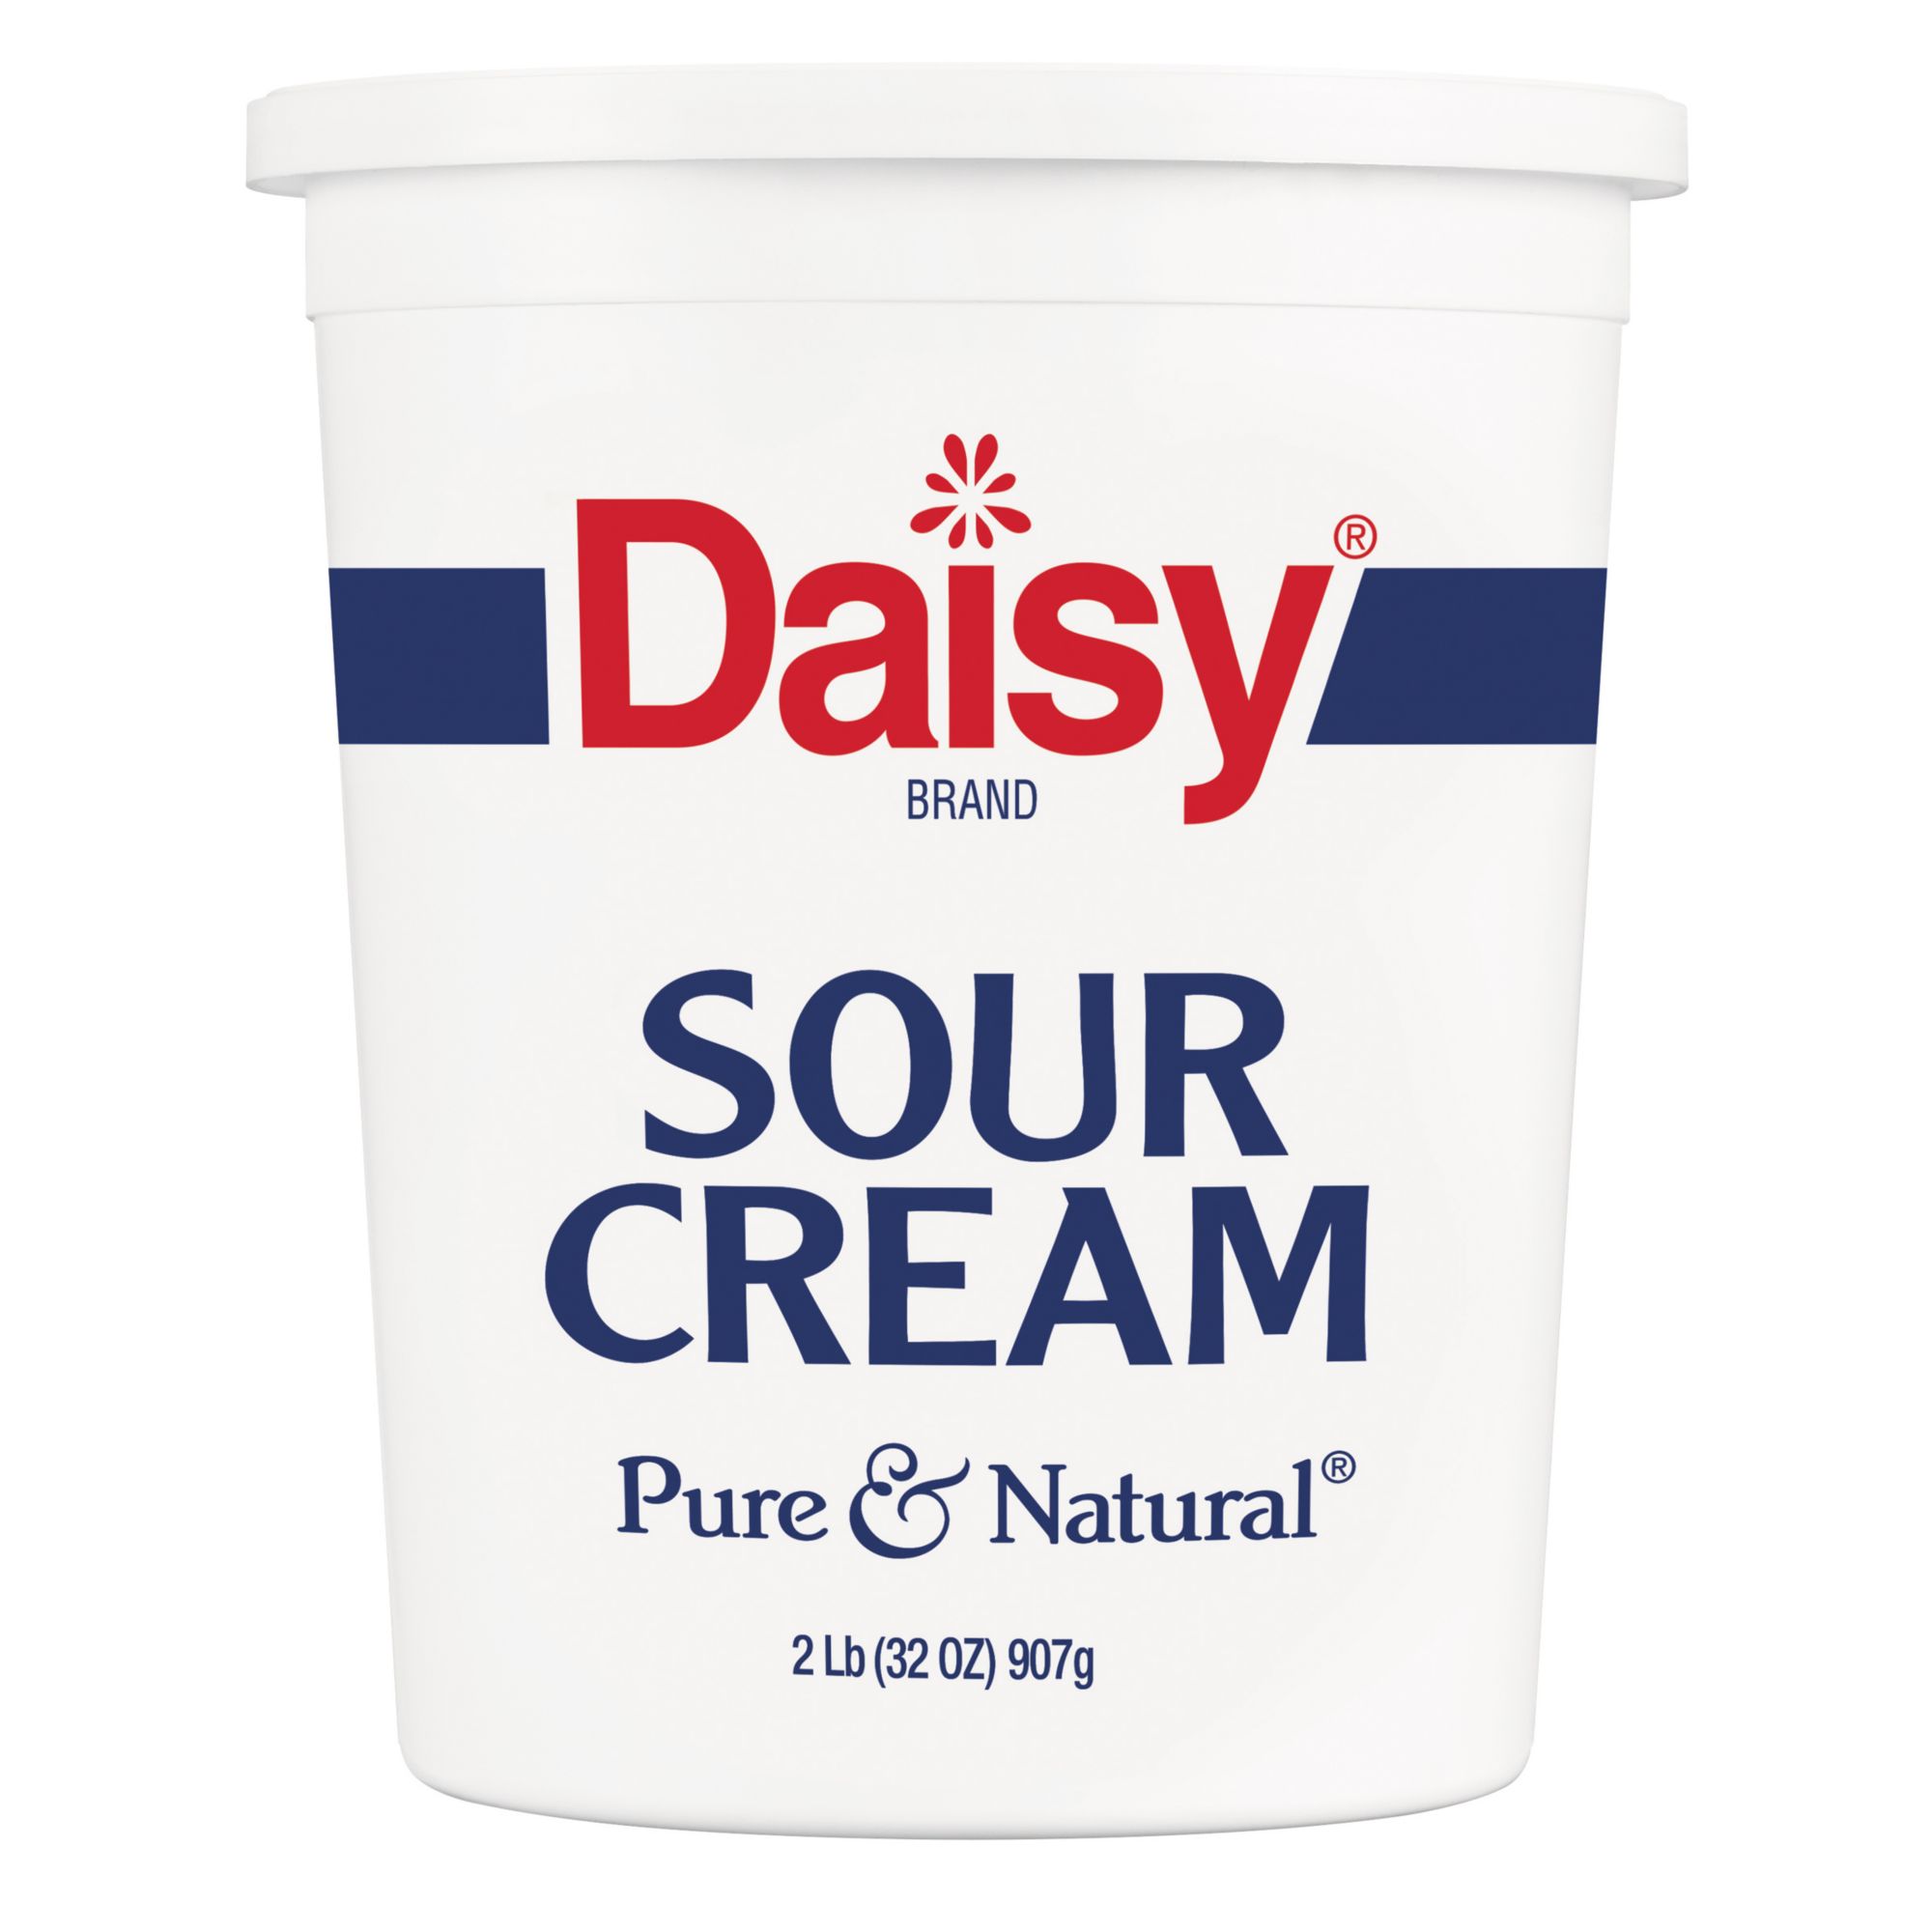 Daisy Brand Sour Cream, 2 lb.